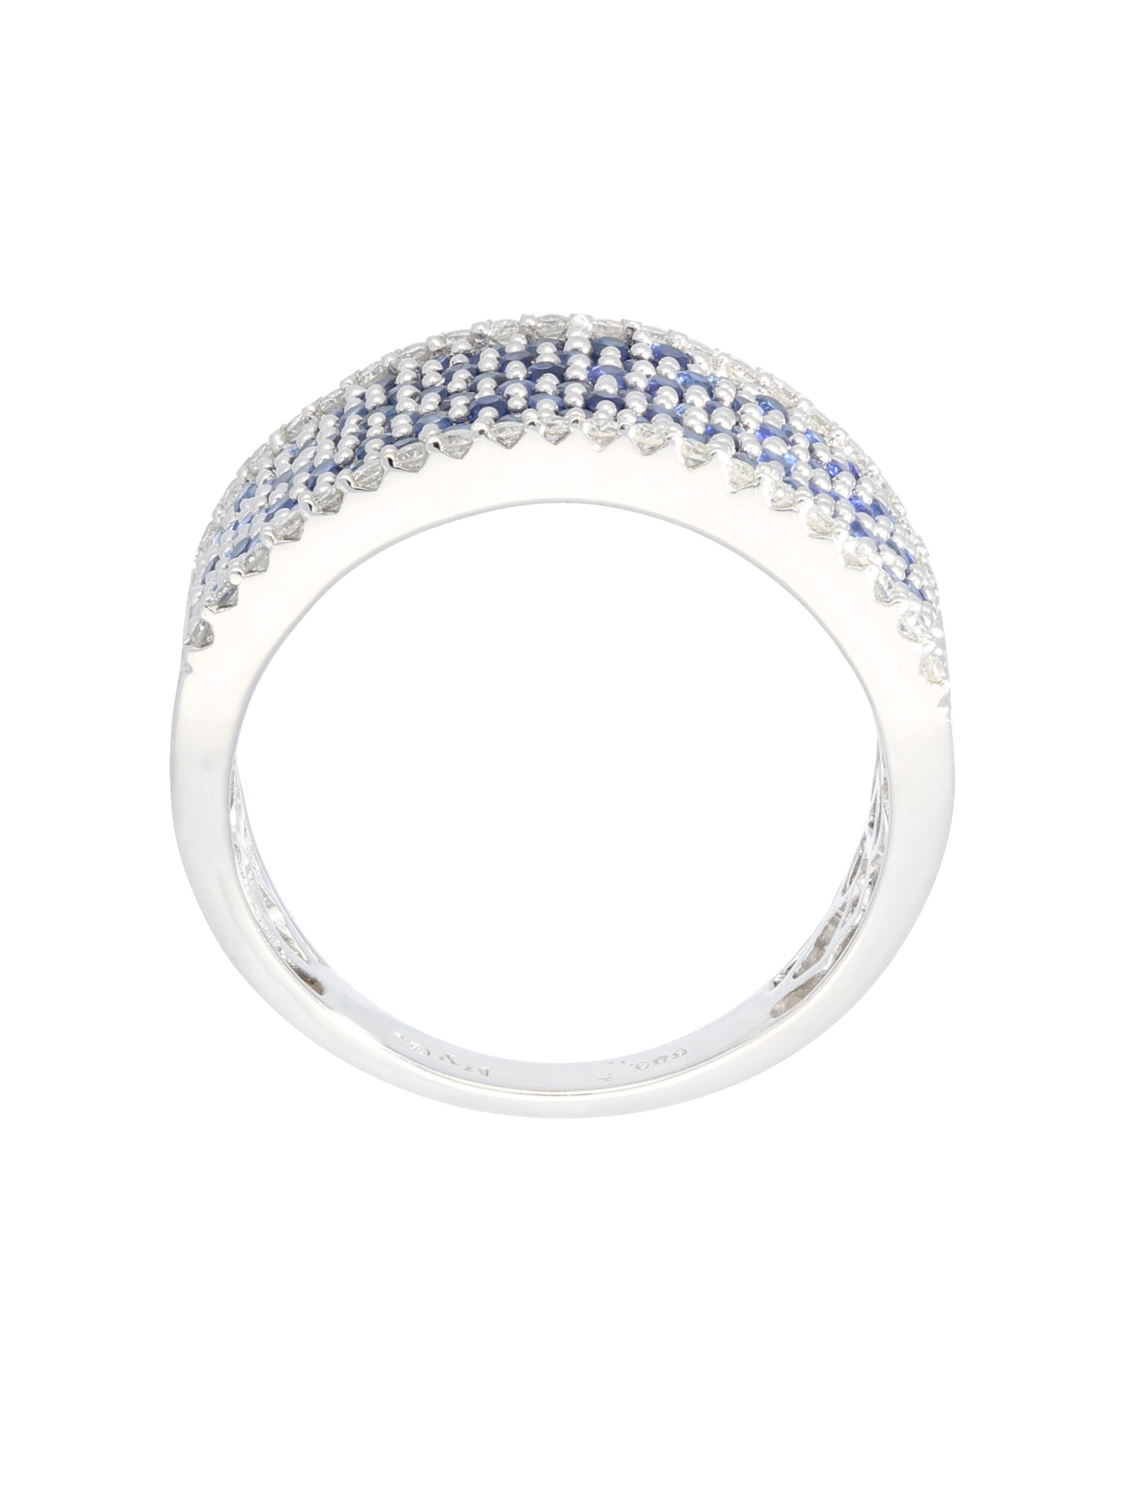 Panache - Saphir & Diamant Ring mit Edelstein 585 Weißgold - 0,25ct. - Größe 58